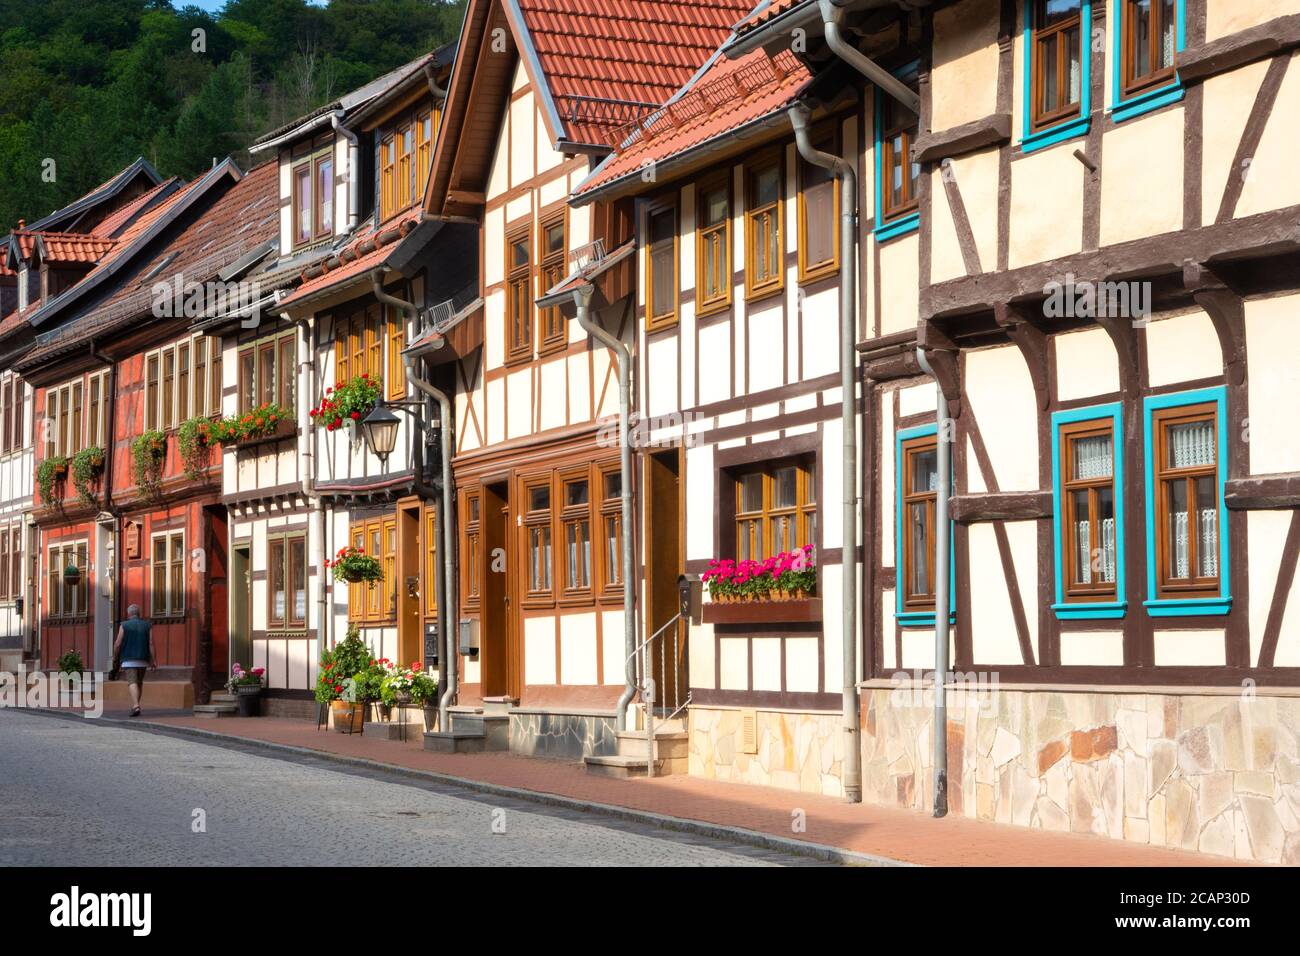 Alemania, Stolberg. La histórica ciudad de Sajonia-Anhalt es famosa por sus casas de entramado de madera Foto de stock